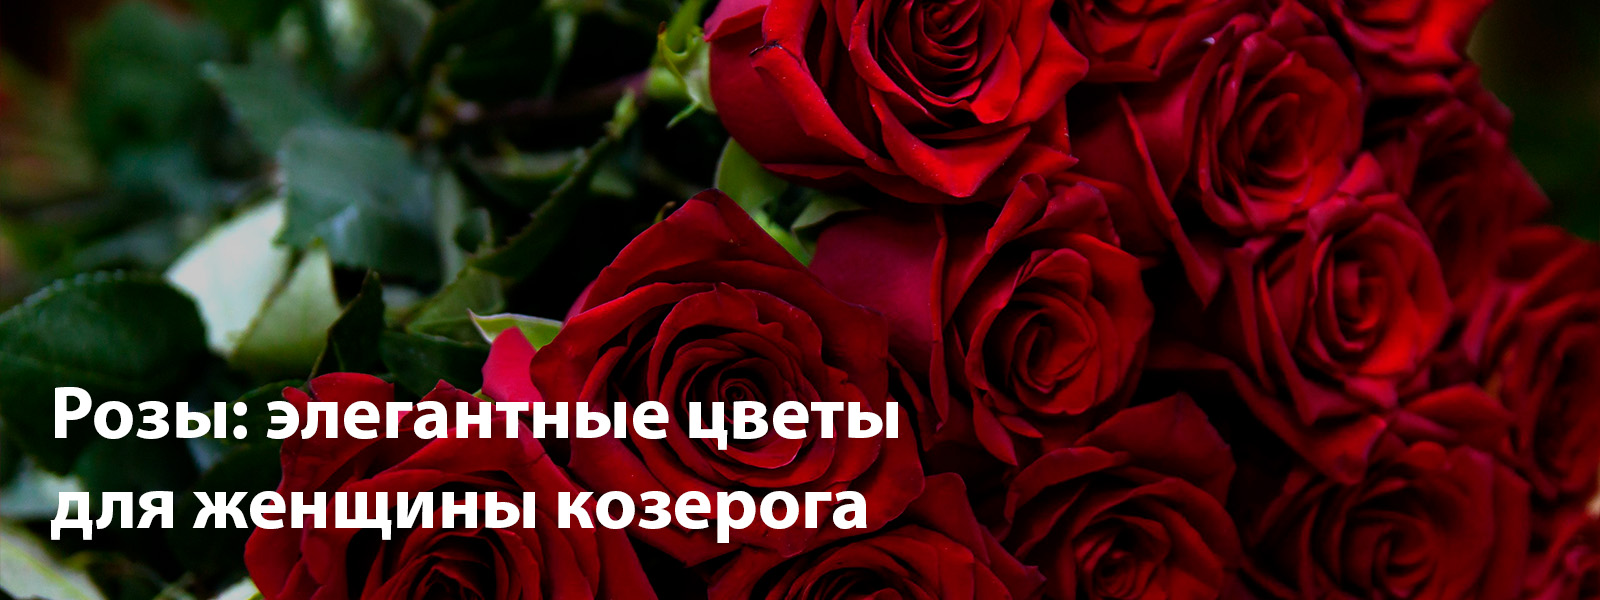 Розы - элегантные цветы для женщины козерога